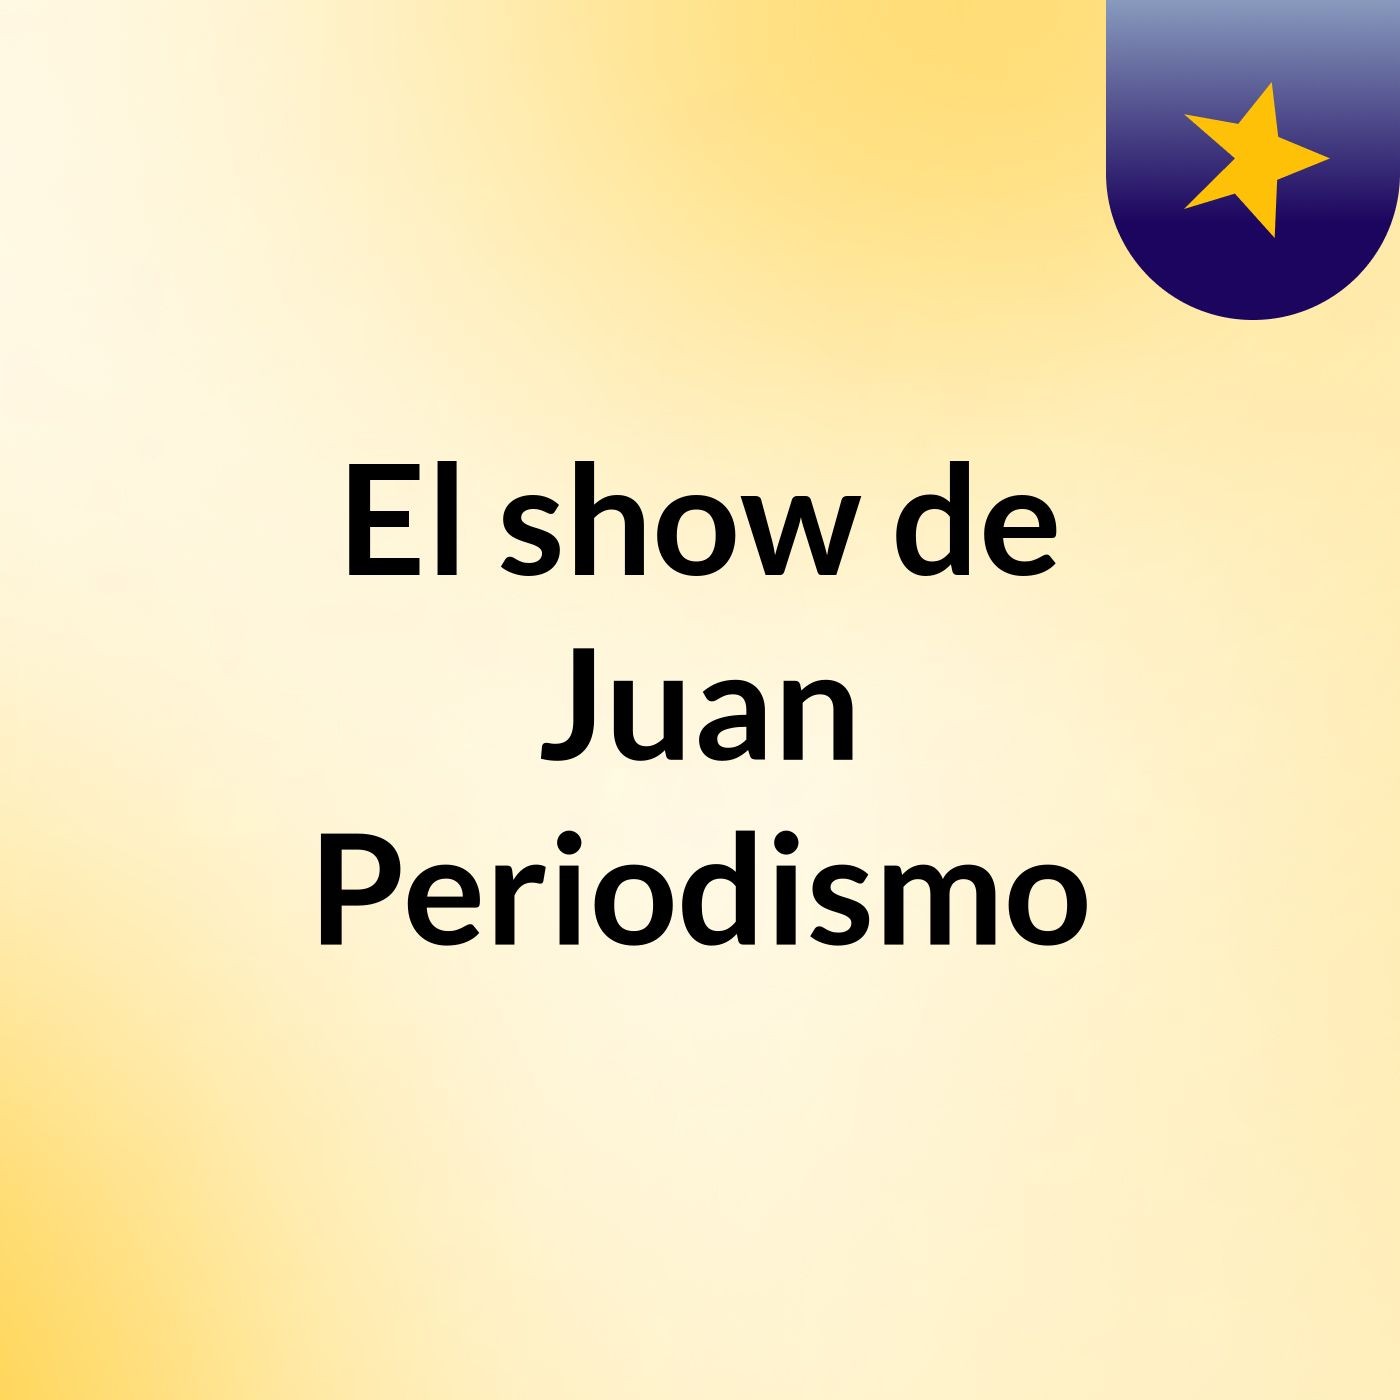 El show de Juan Periodismo